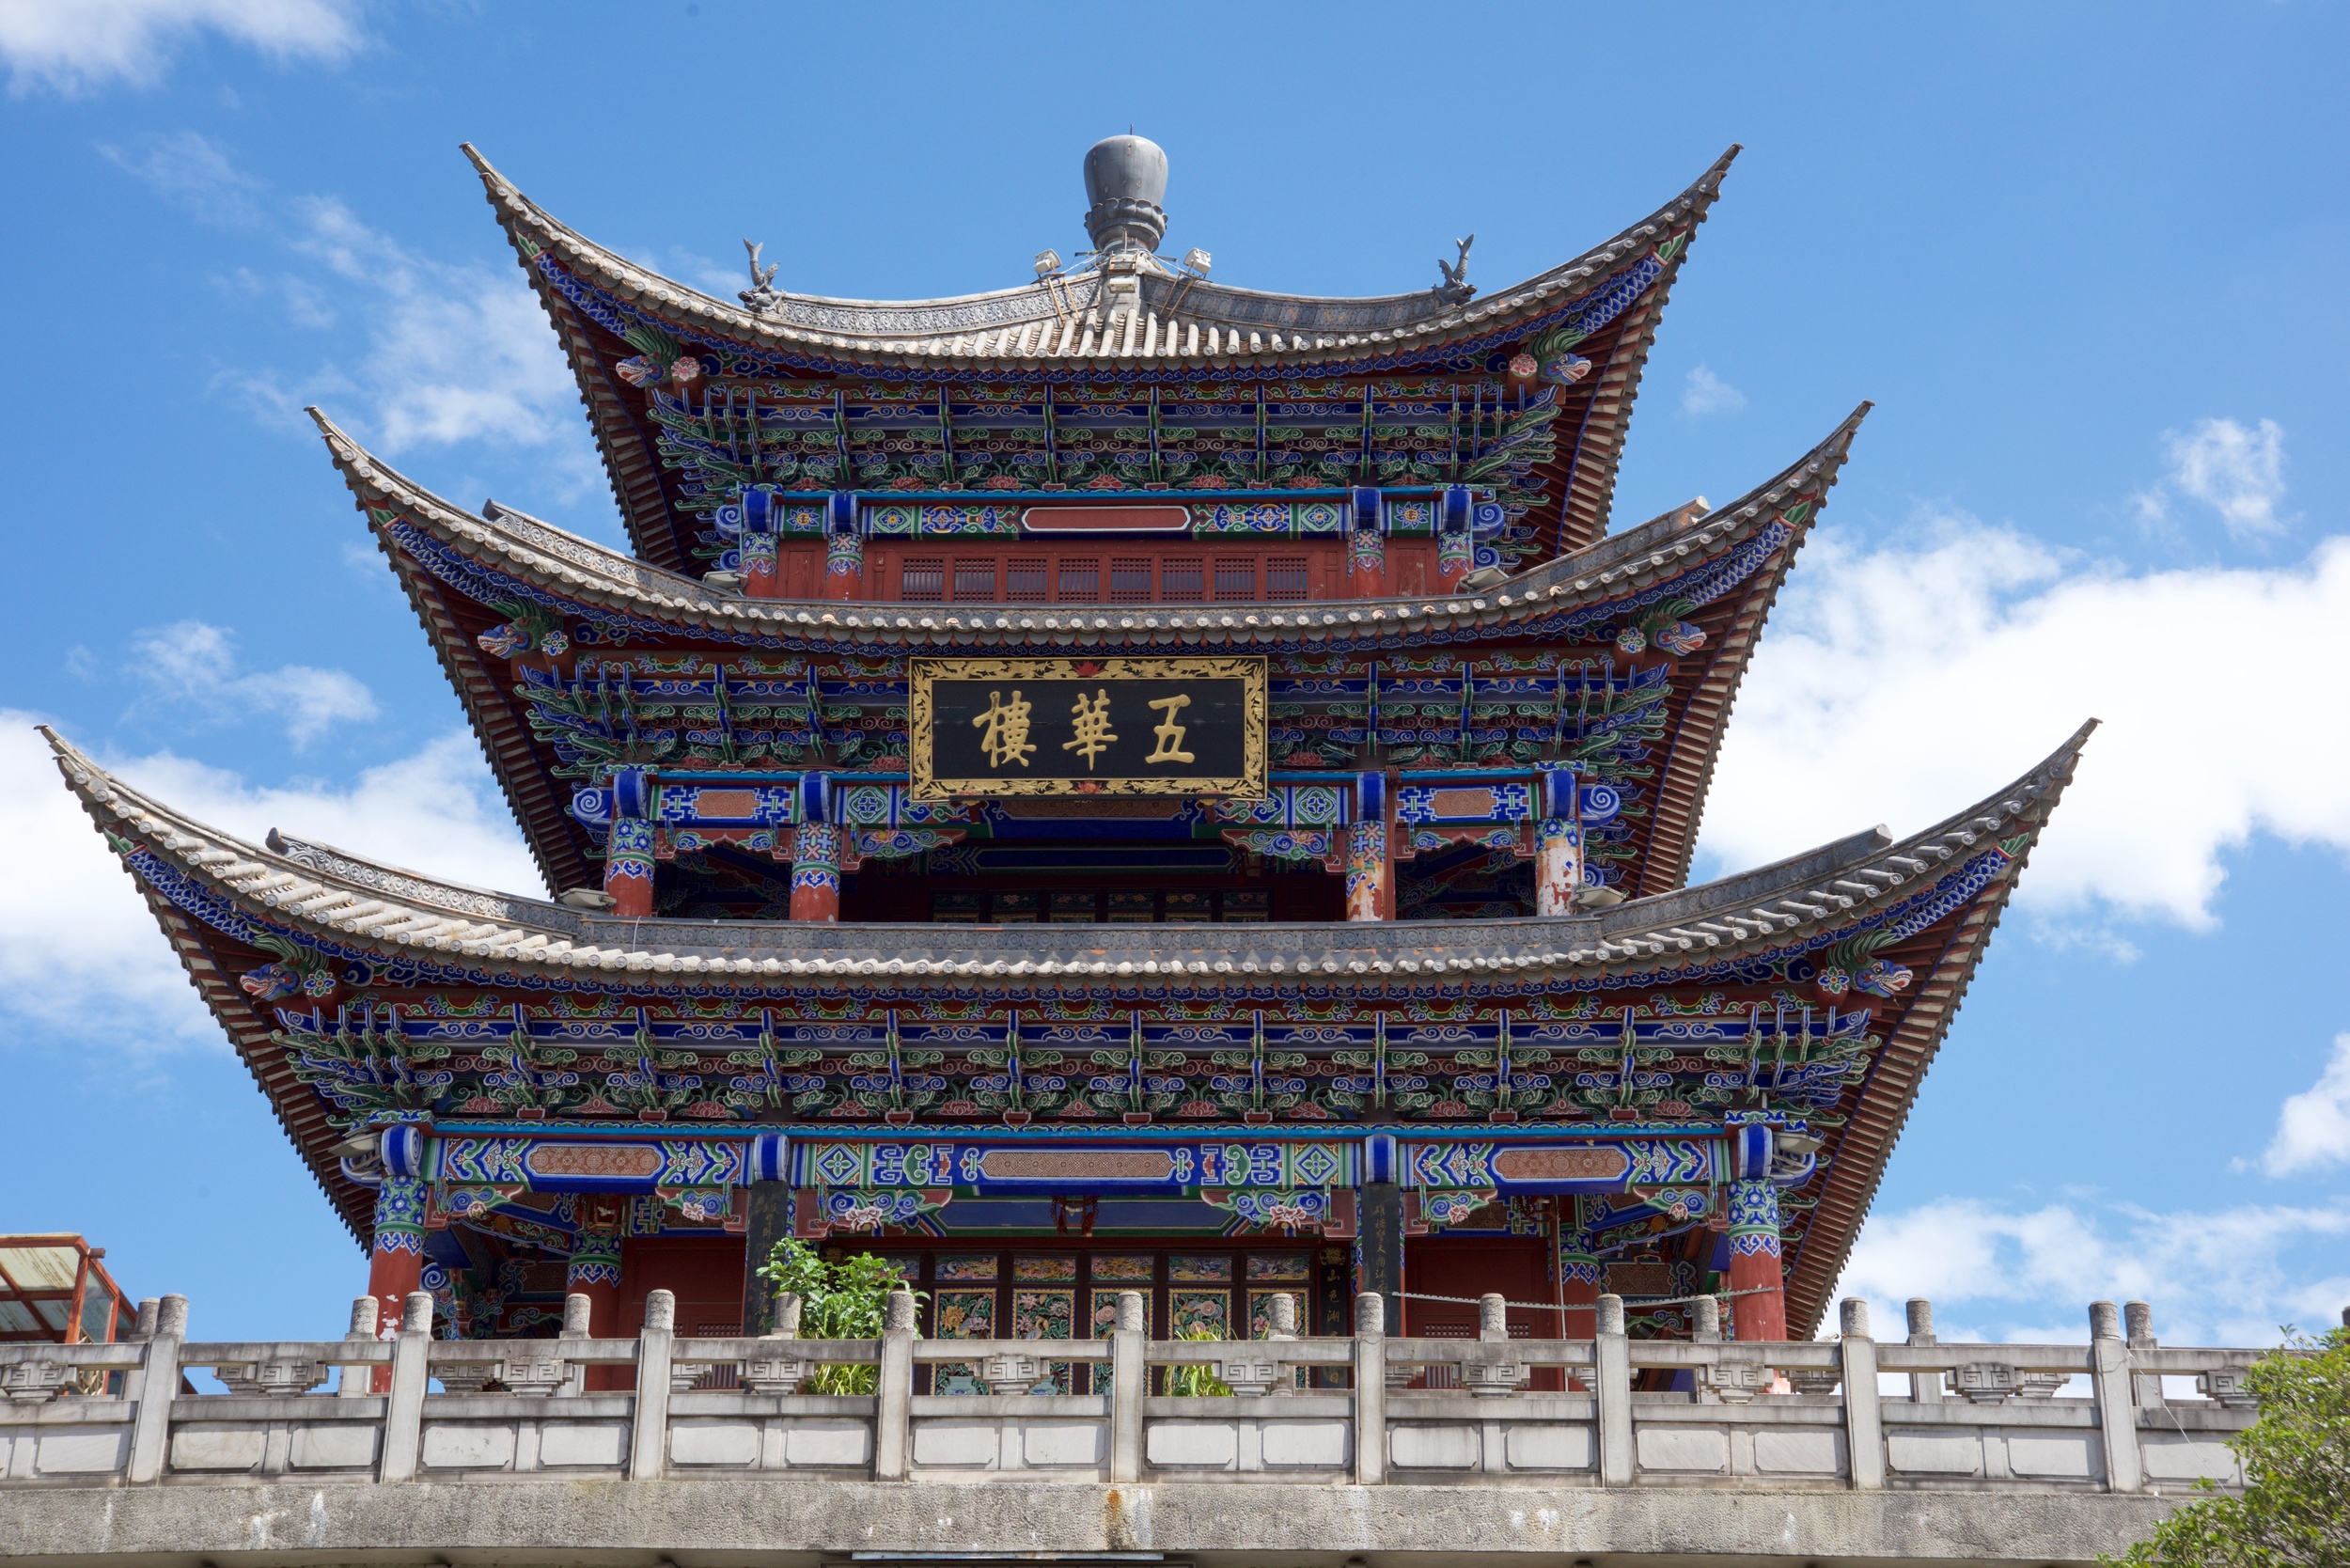  Wuhualou (Tower of Five Glories), Dali 